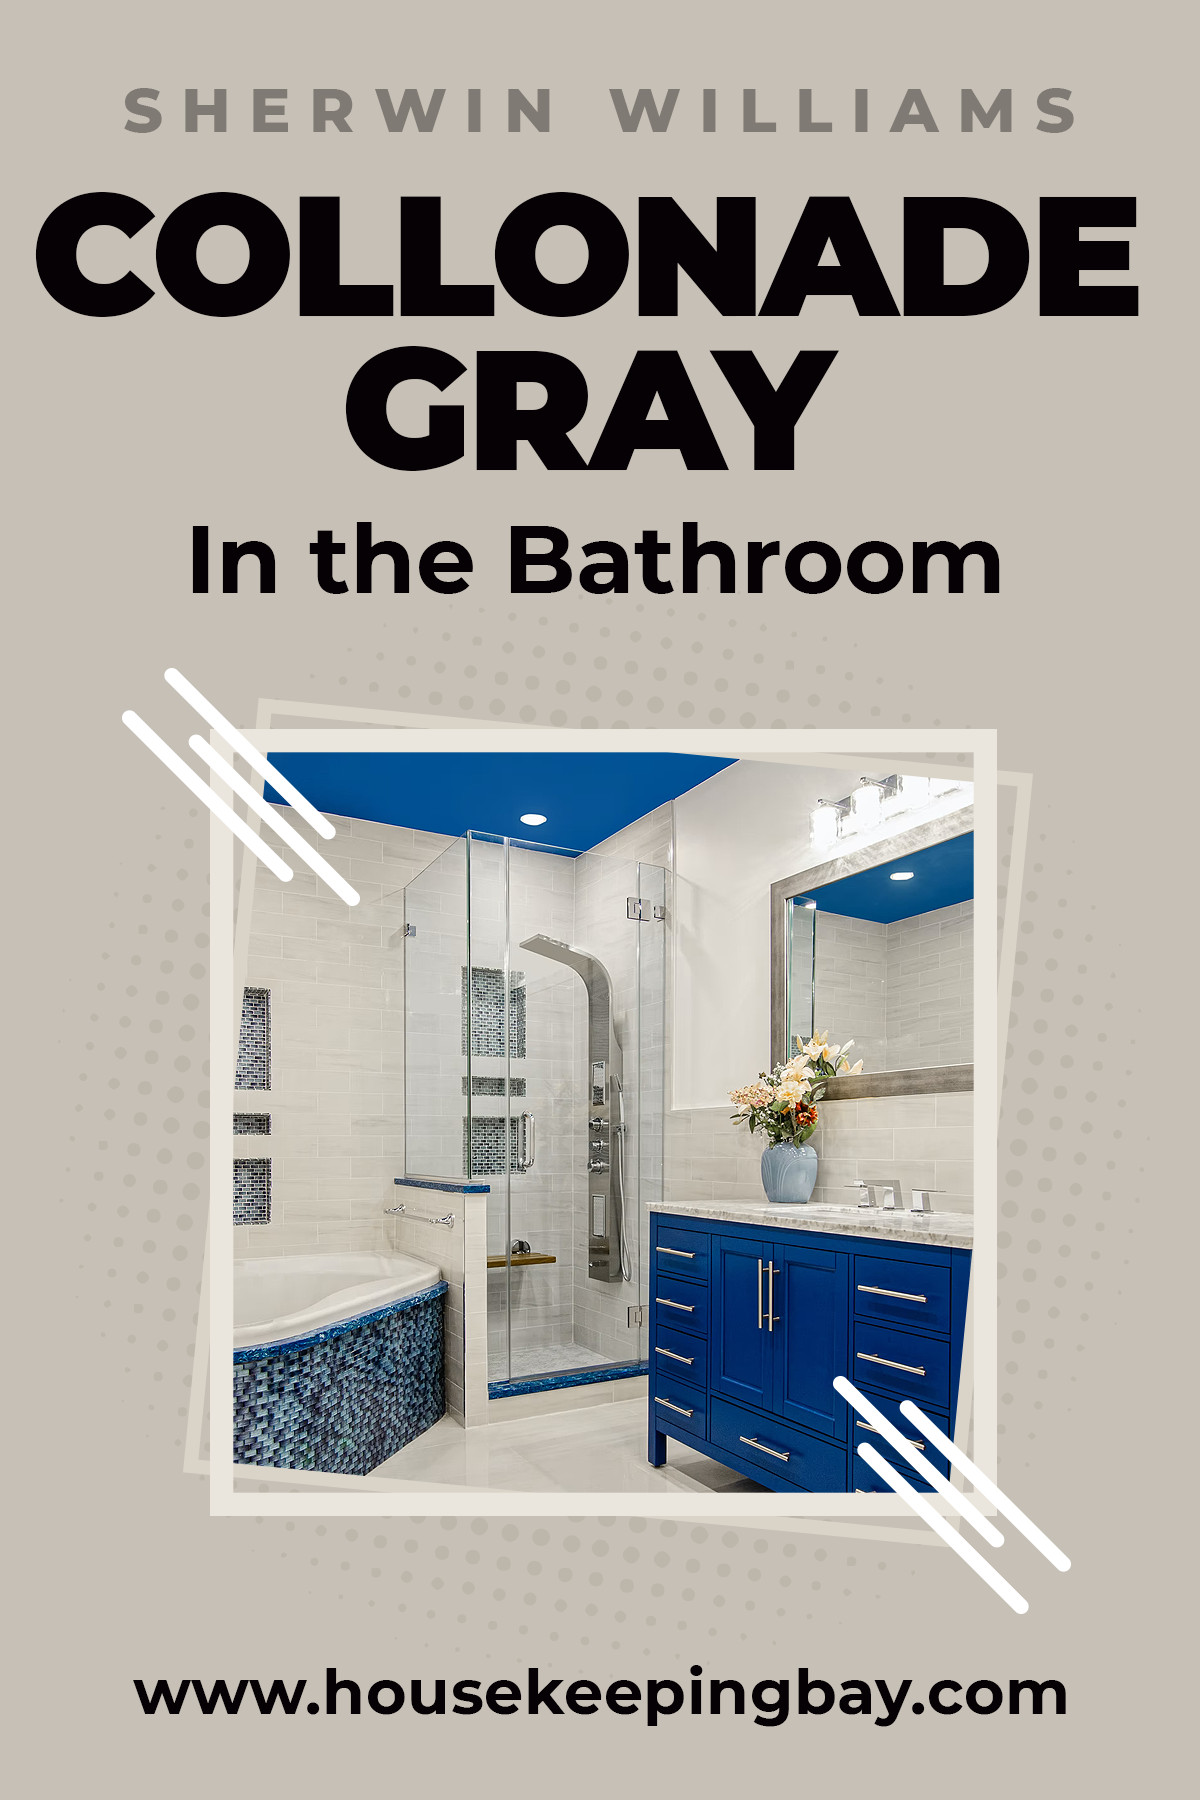 Collonade gray in the Bathroom